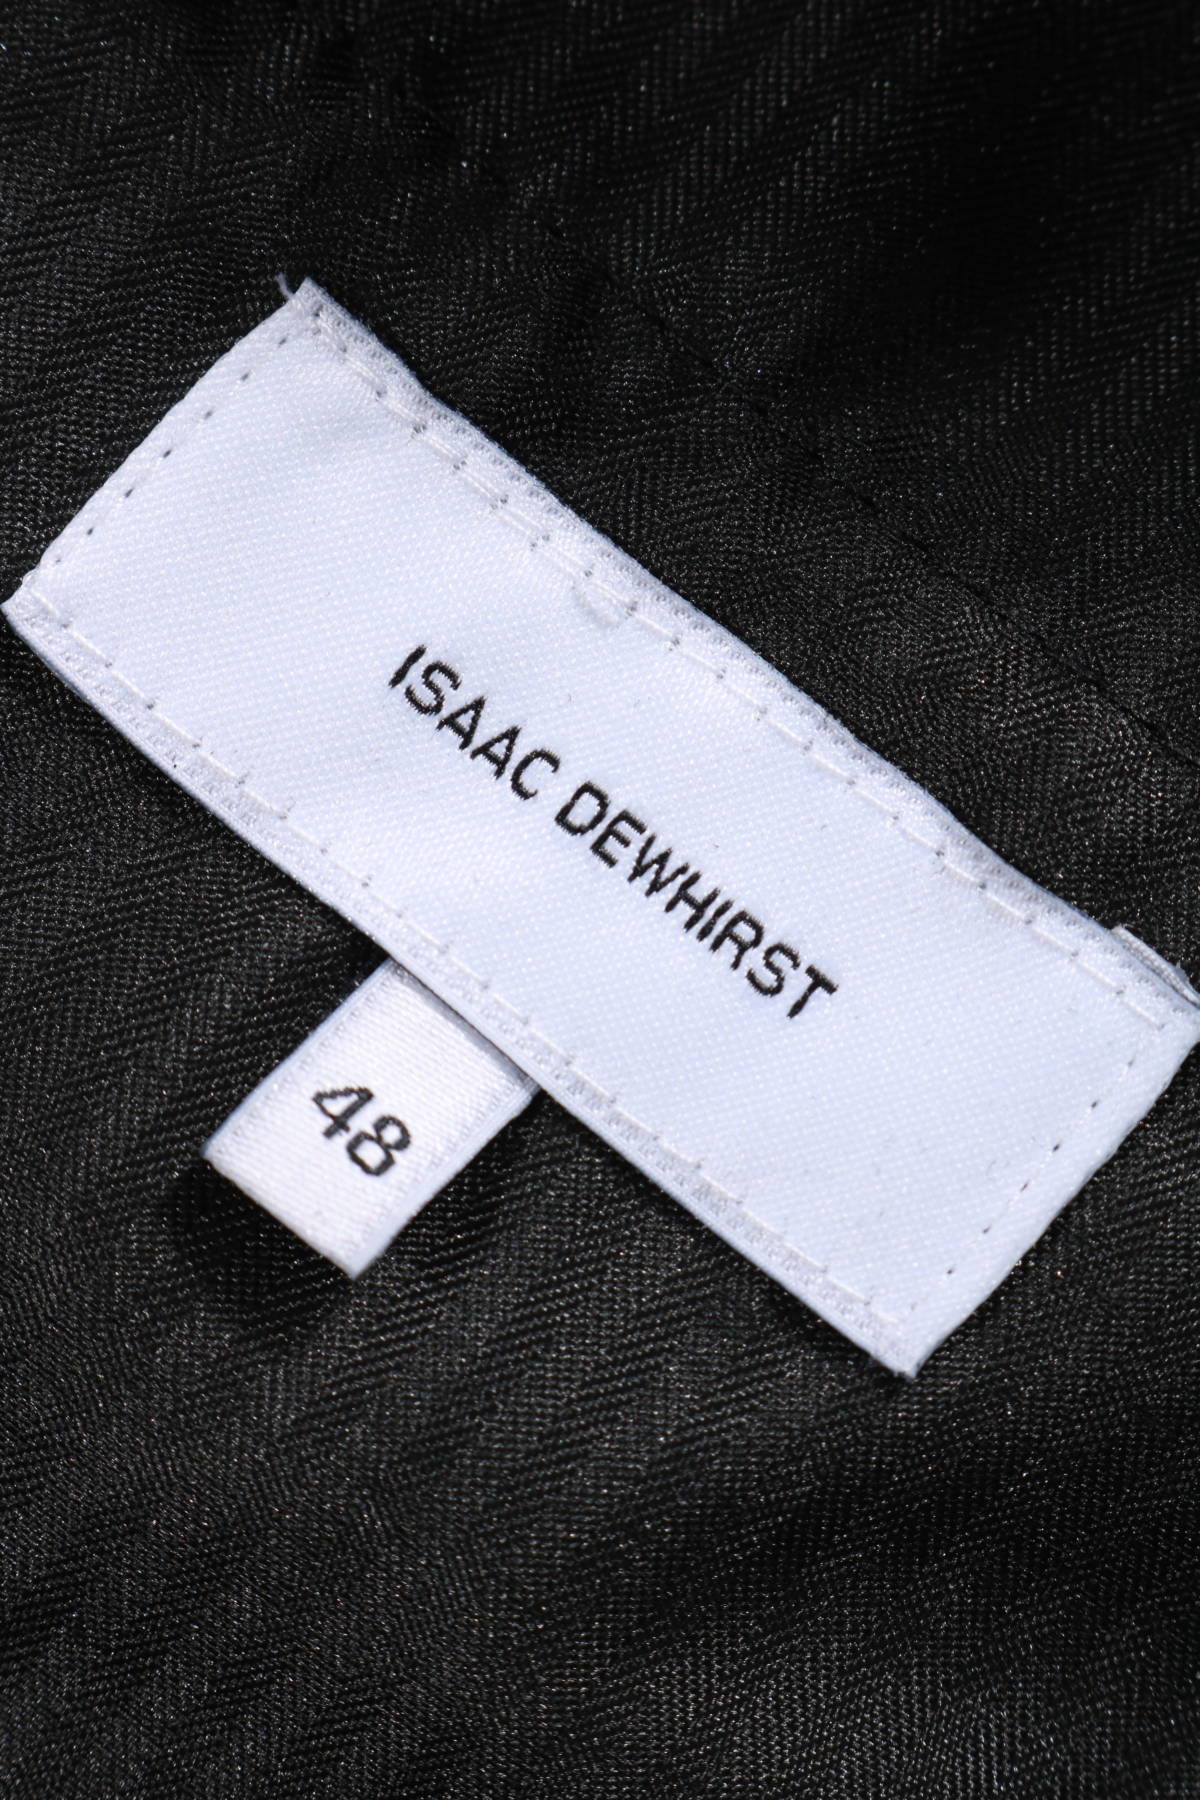 Официален панталон ISAAC DEWHIRST4